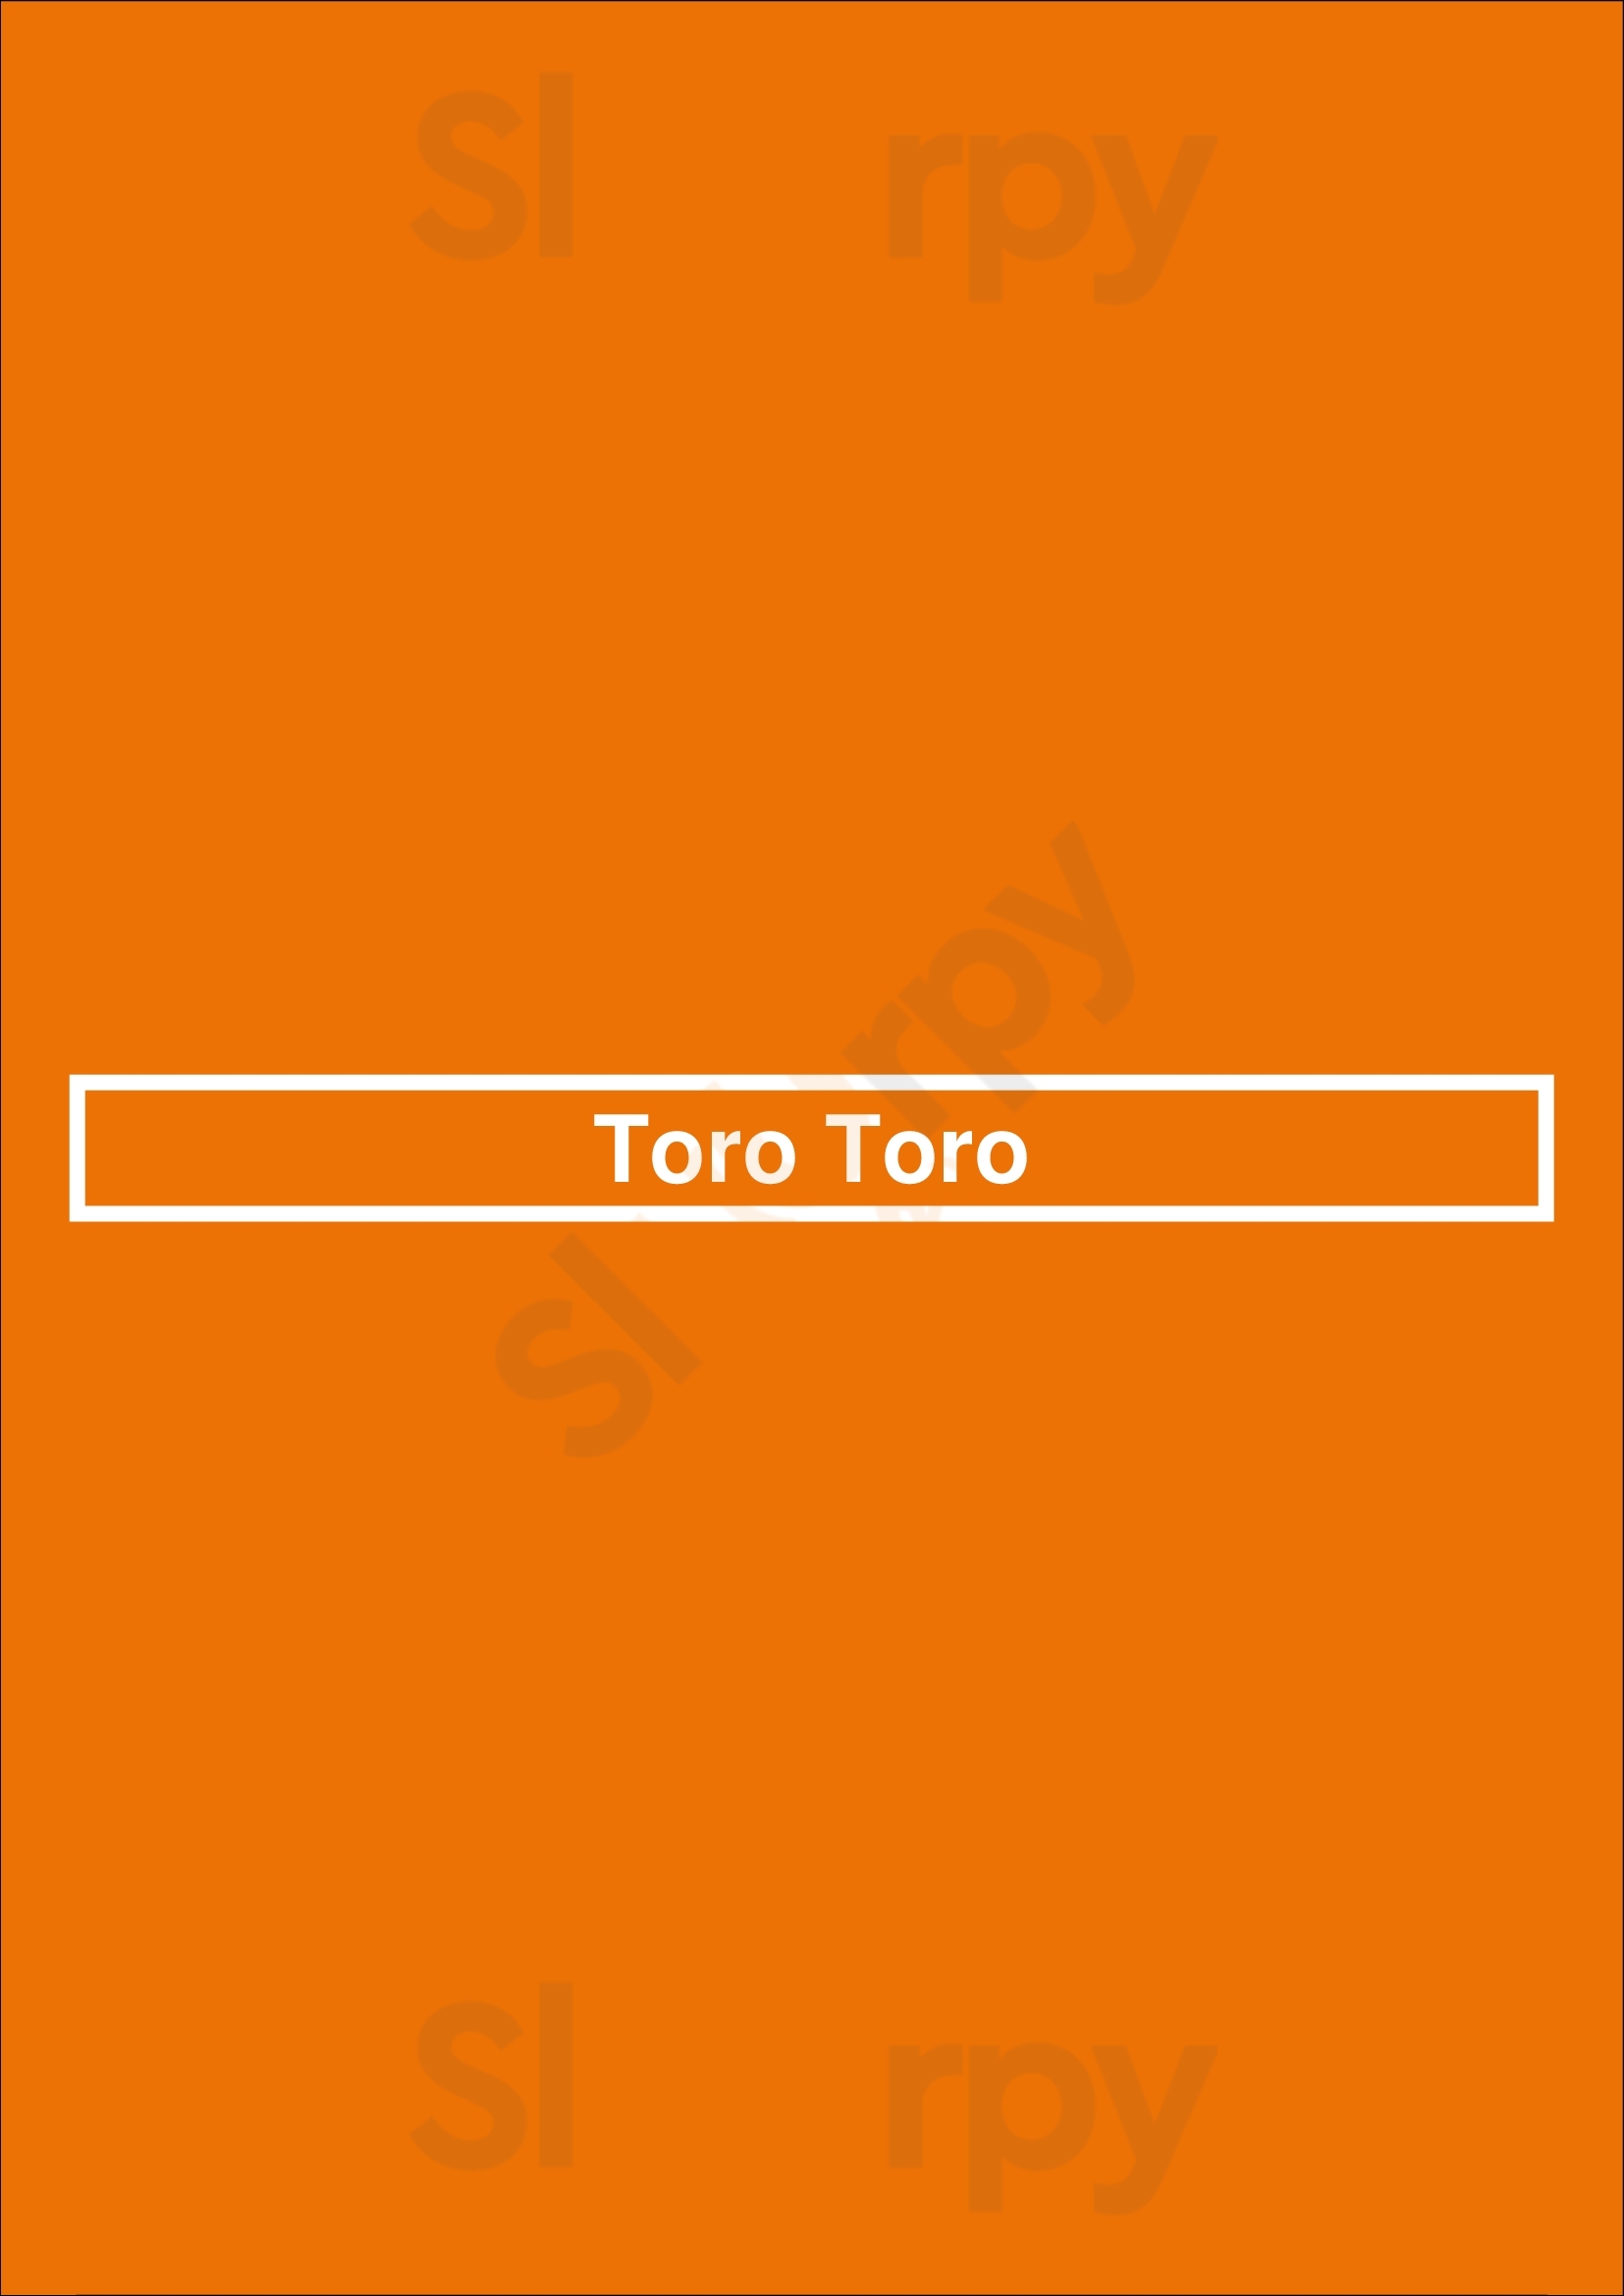 Toro Toro Washington DC Menu - 1